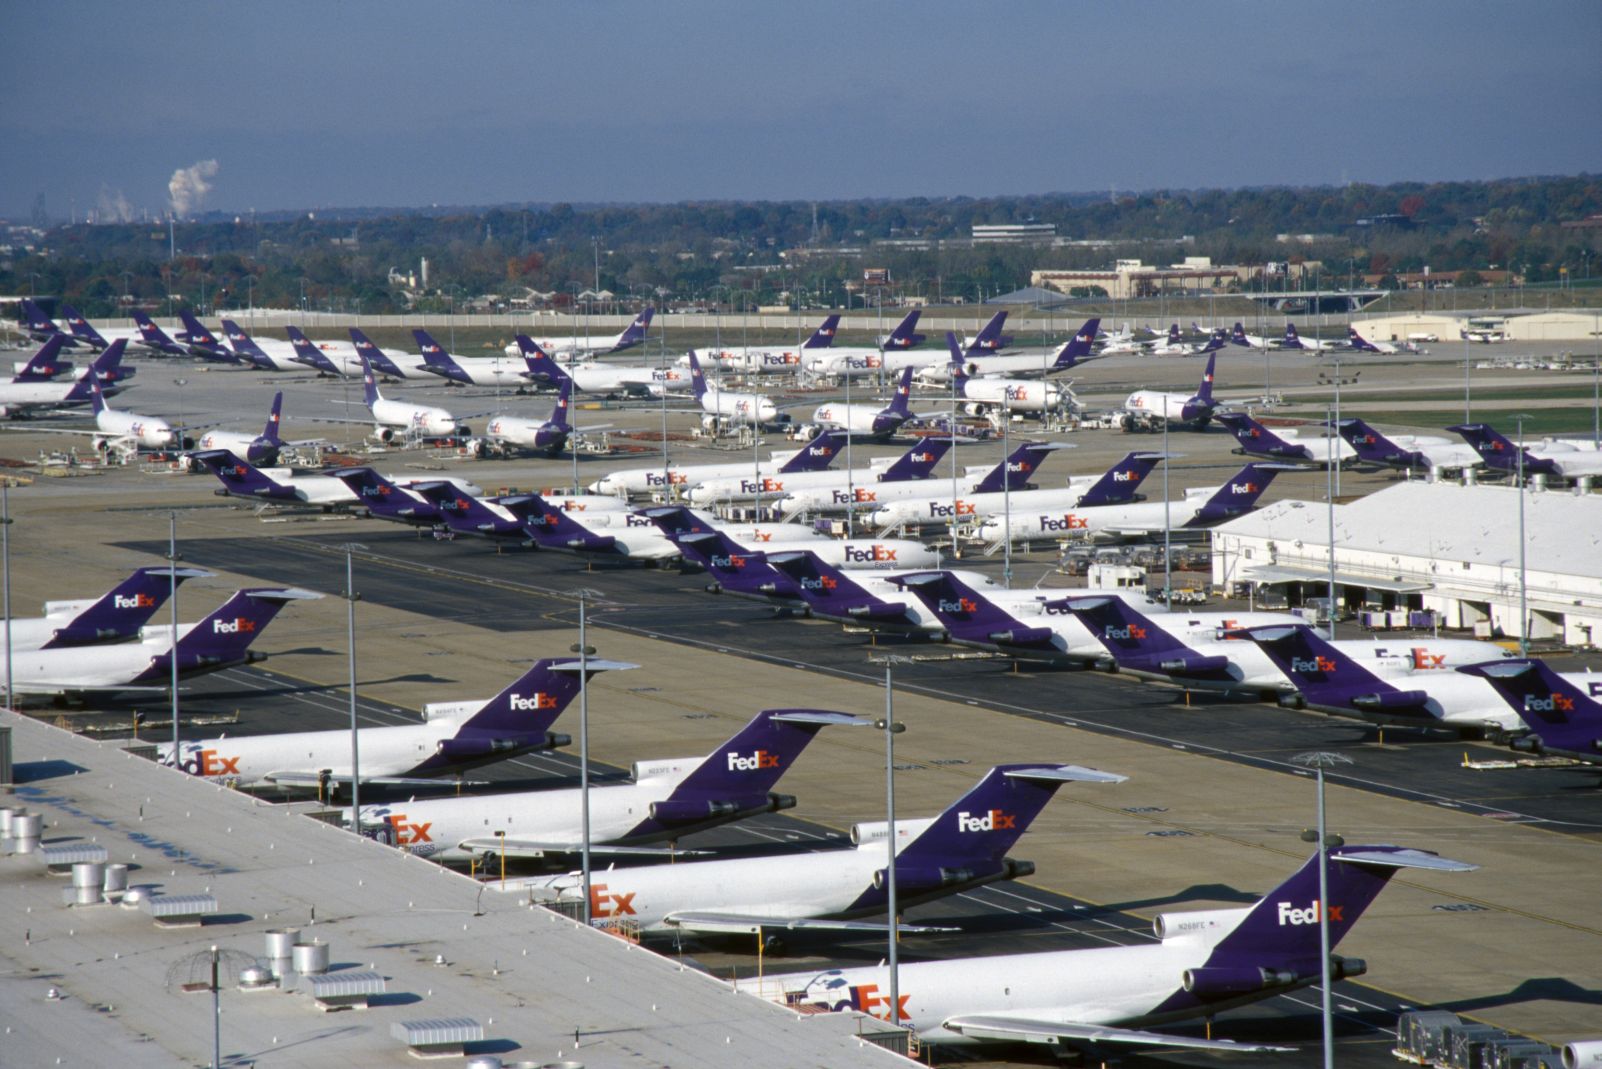 A FedExnek persze van mivel szálíltani: a tavalyi flotta 383 gépből állt